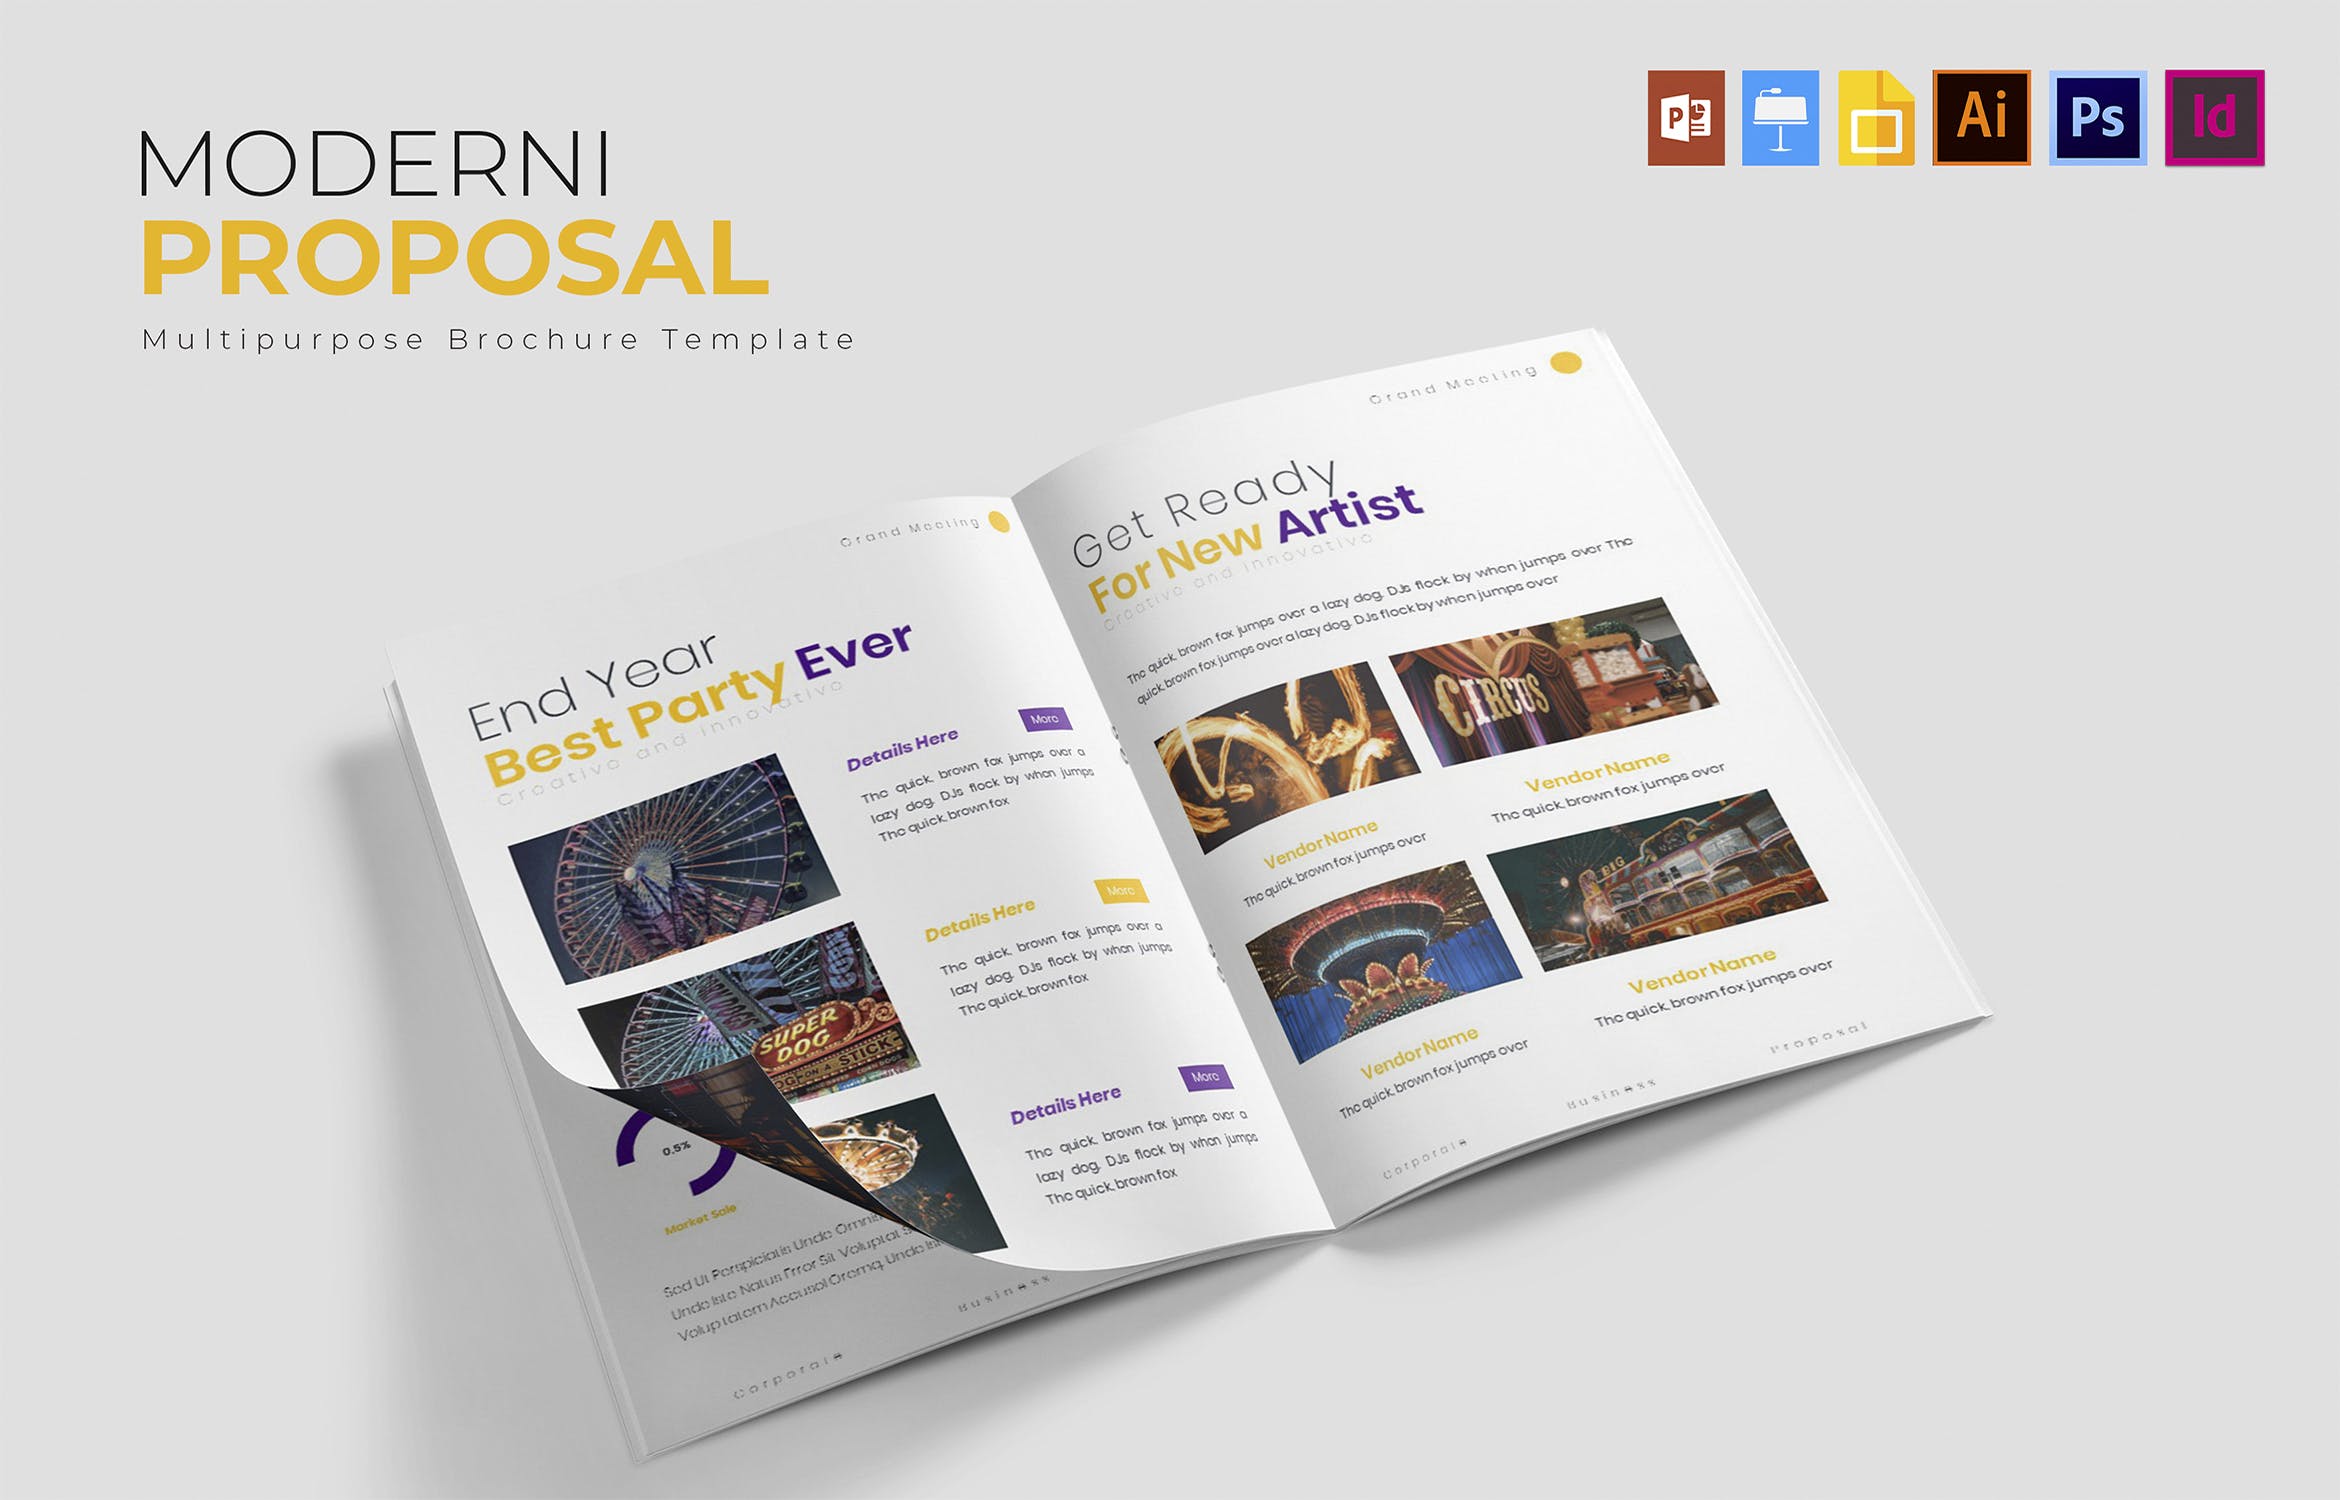 现代版式设计商业提案模板 Moderni Festival | Brochure Template插图(3)